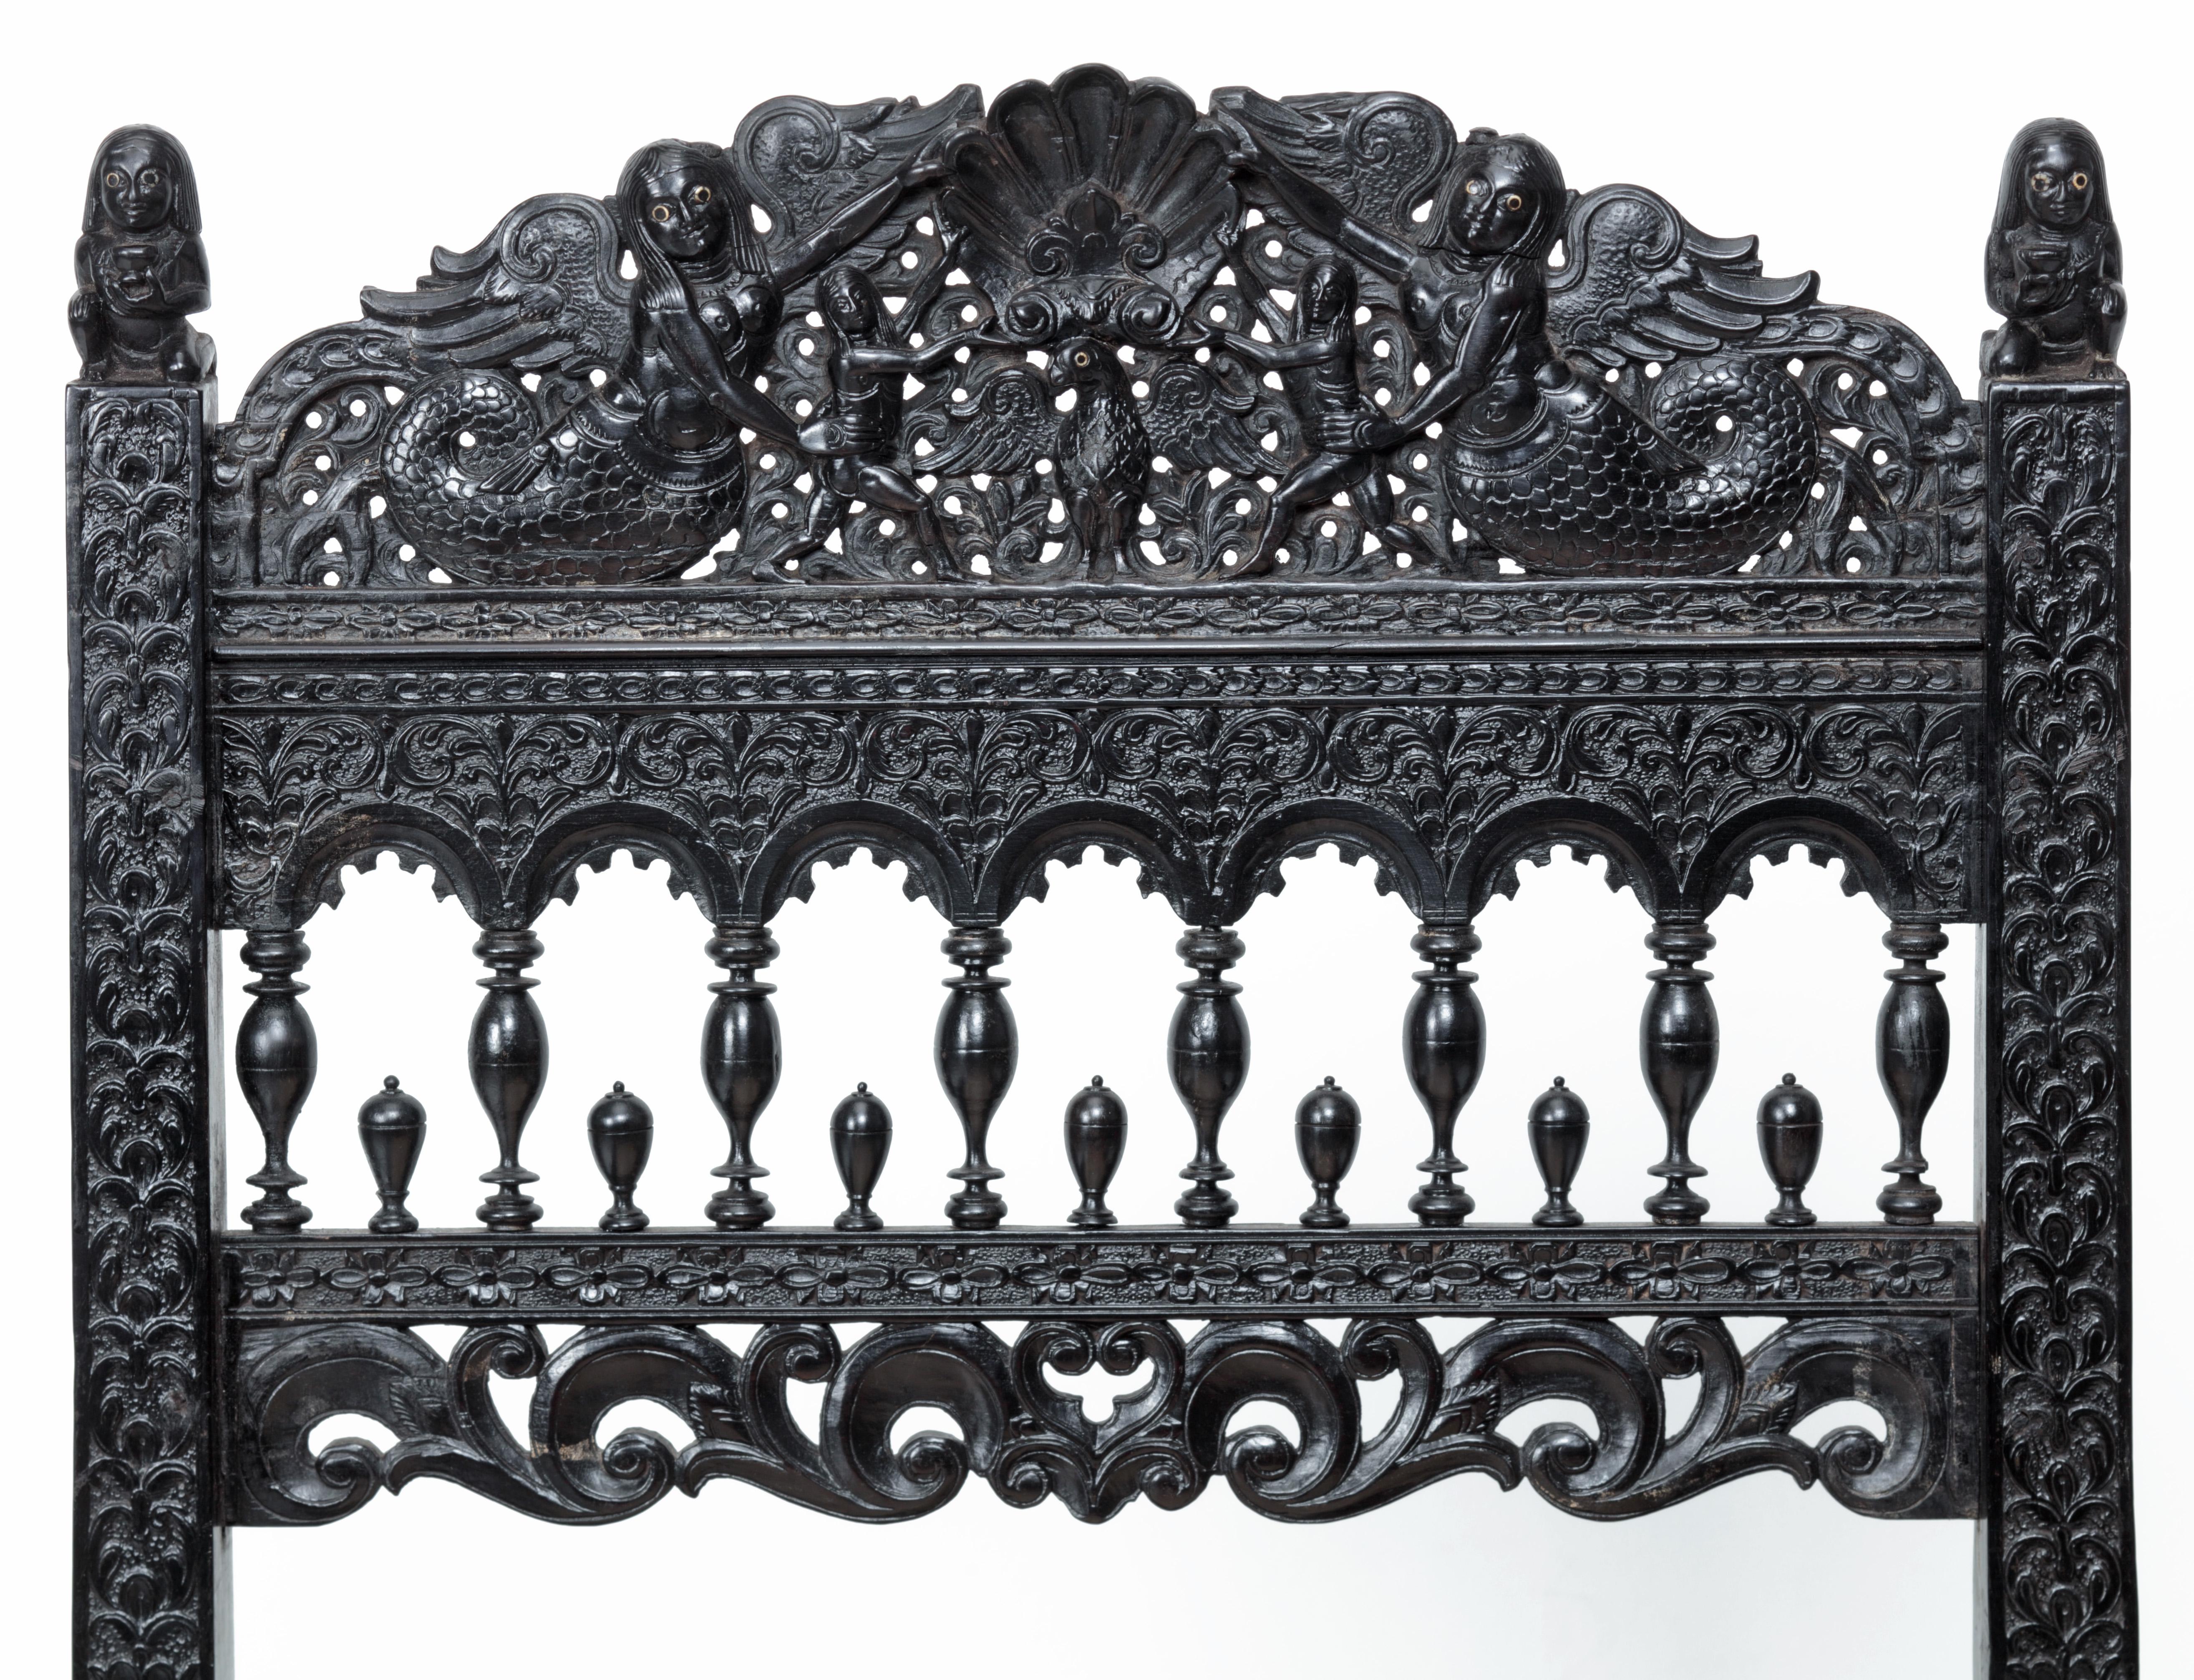 Chaise basse en ébène indien ayant appartenu au duc de Westminster

Côte de Coromandel, peut-être Madras, 1680-1700

L'ensemble est densément sculpté d'un éventail de sirènes, d'oiseaux, de poissons, de figures mythologiques et de motifs floraux